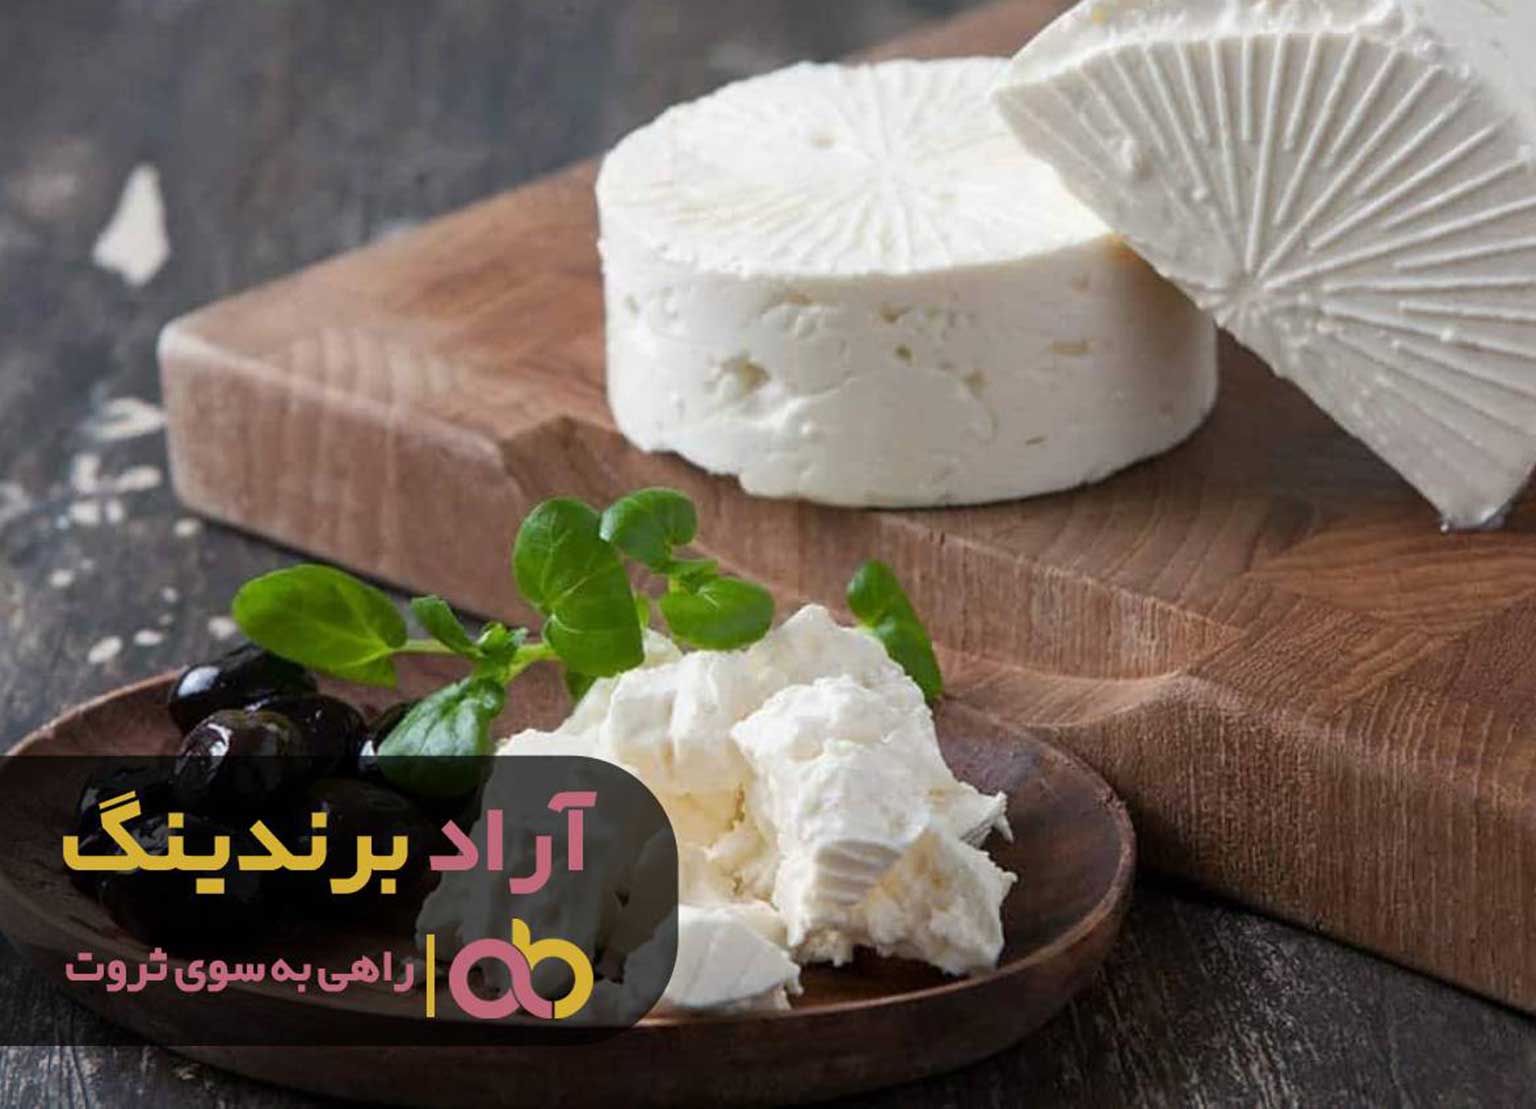 قیمت پنیر گاوی تبریز